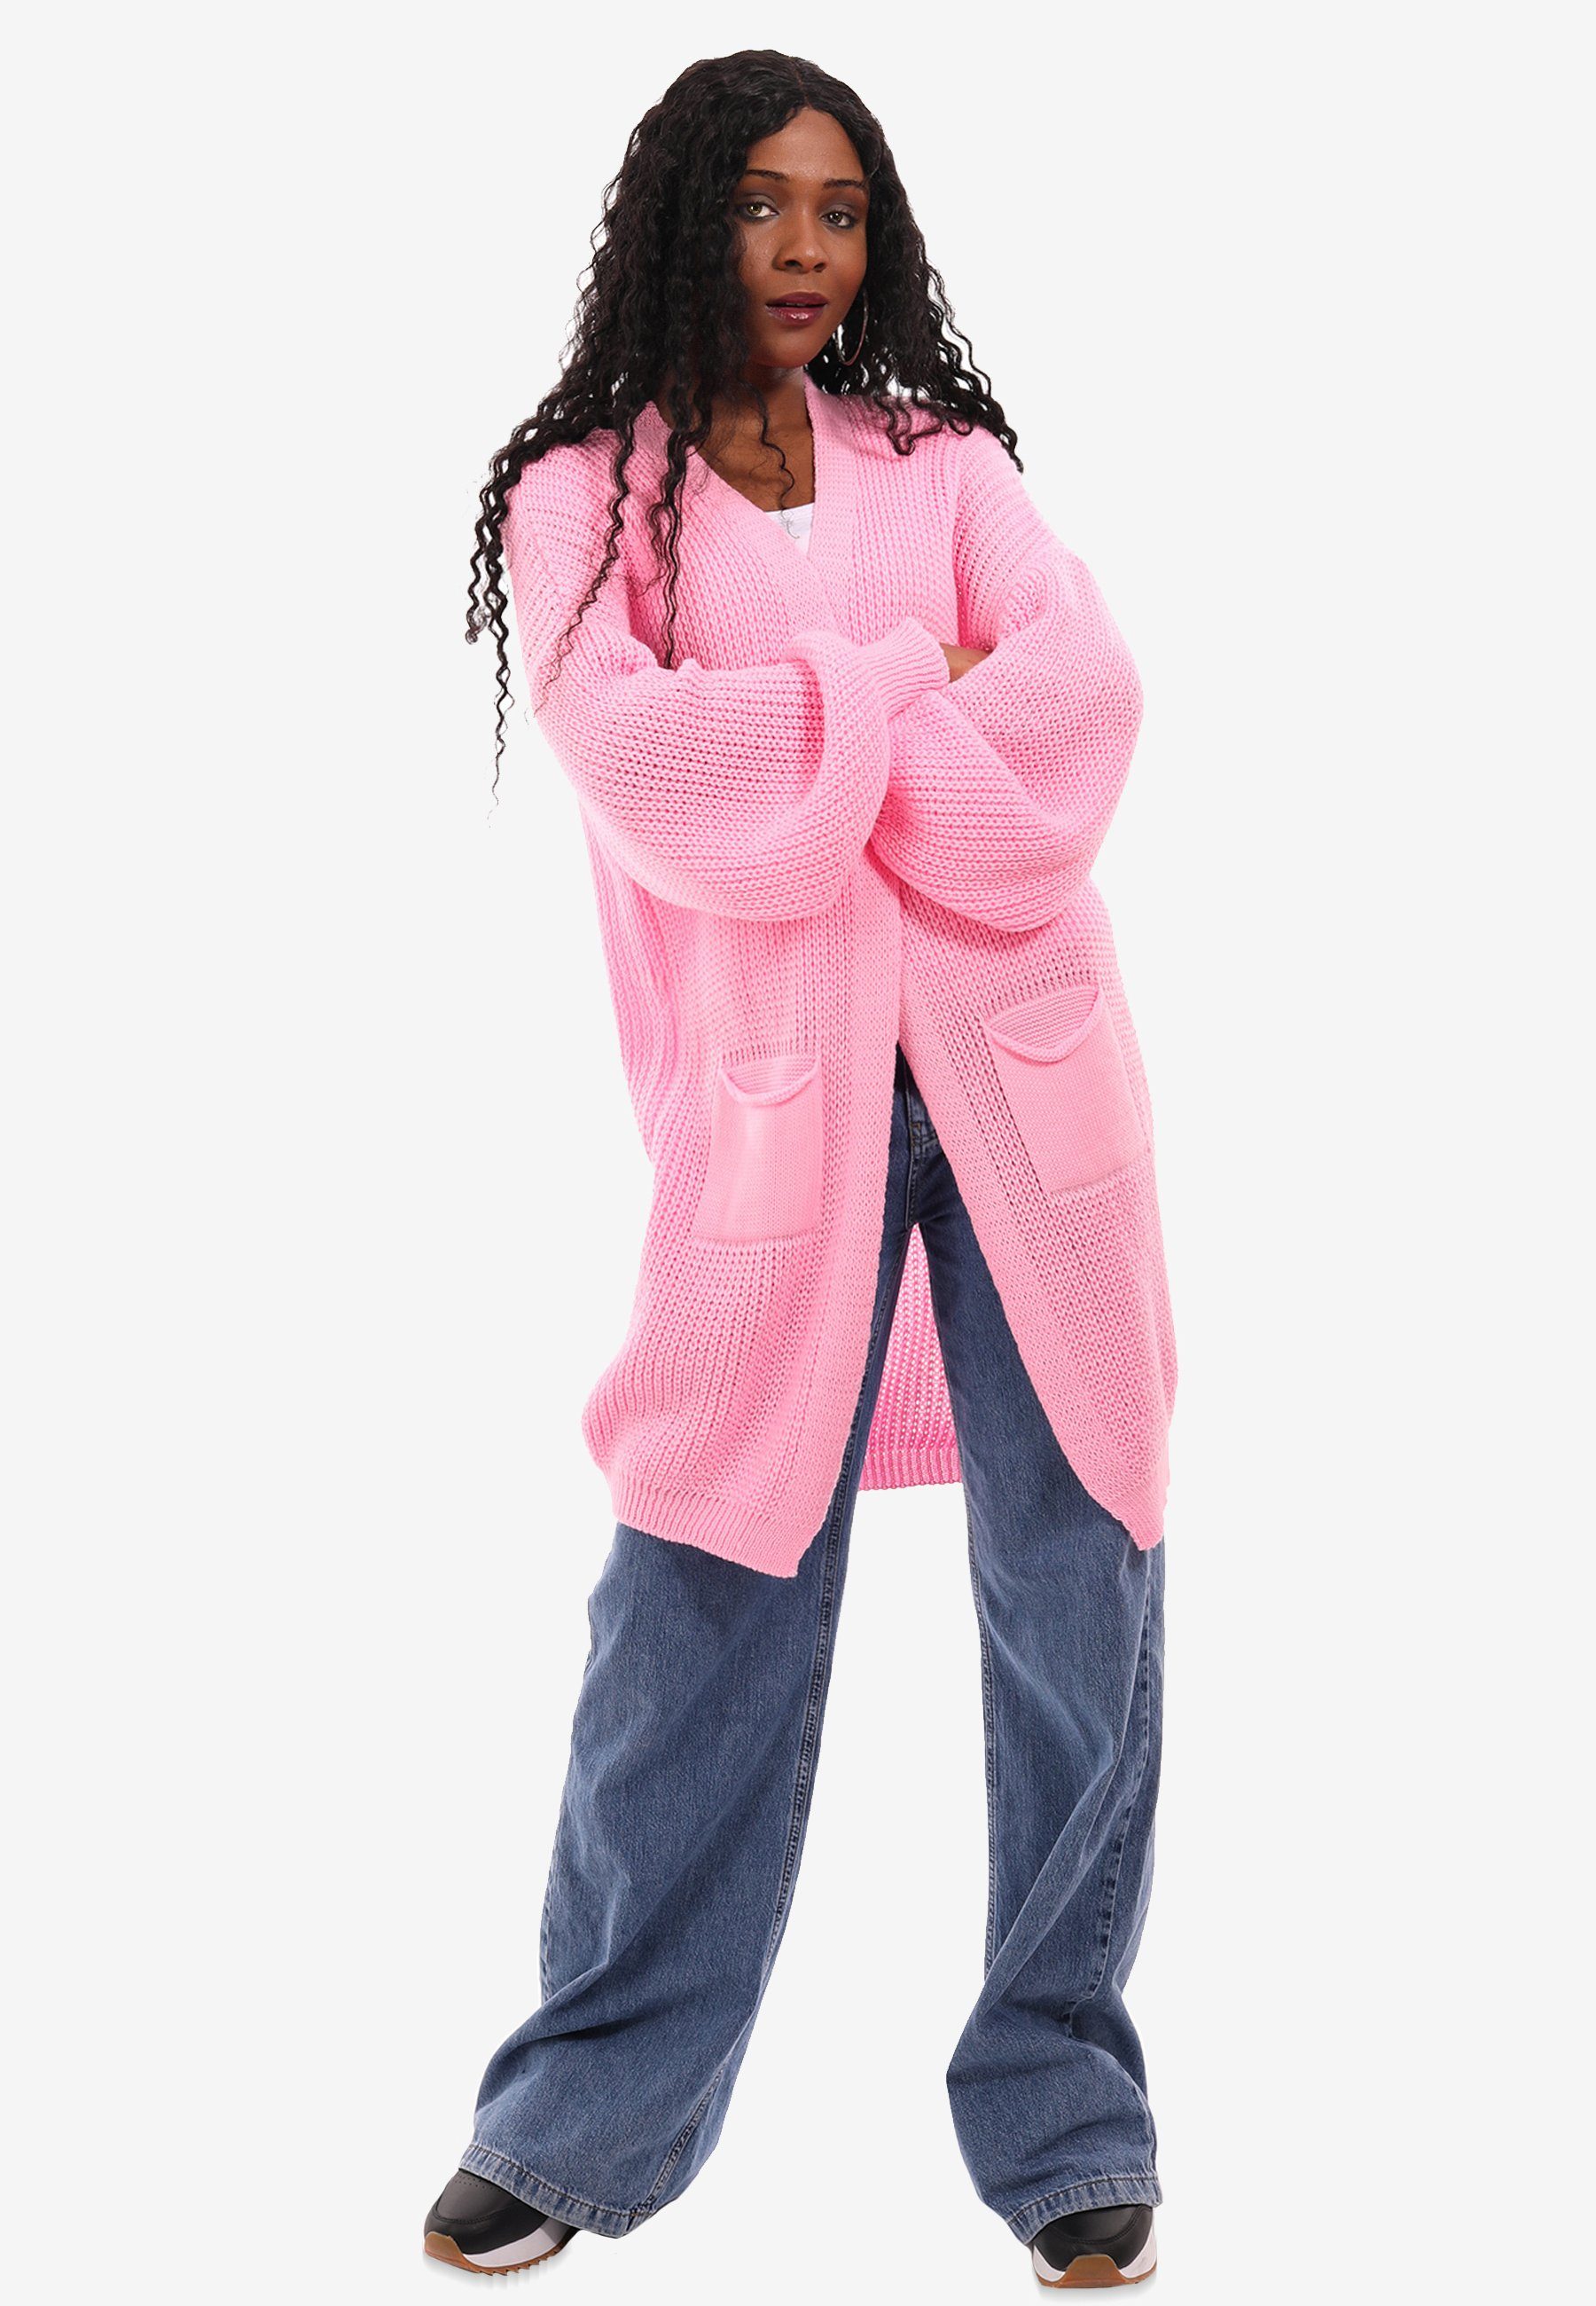 YC Fashion & Style Taschen aufgesetzten Taschen mit Cardigan rosa mit Size One in Strick-Cardigan Unifarbe